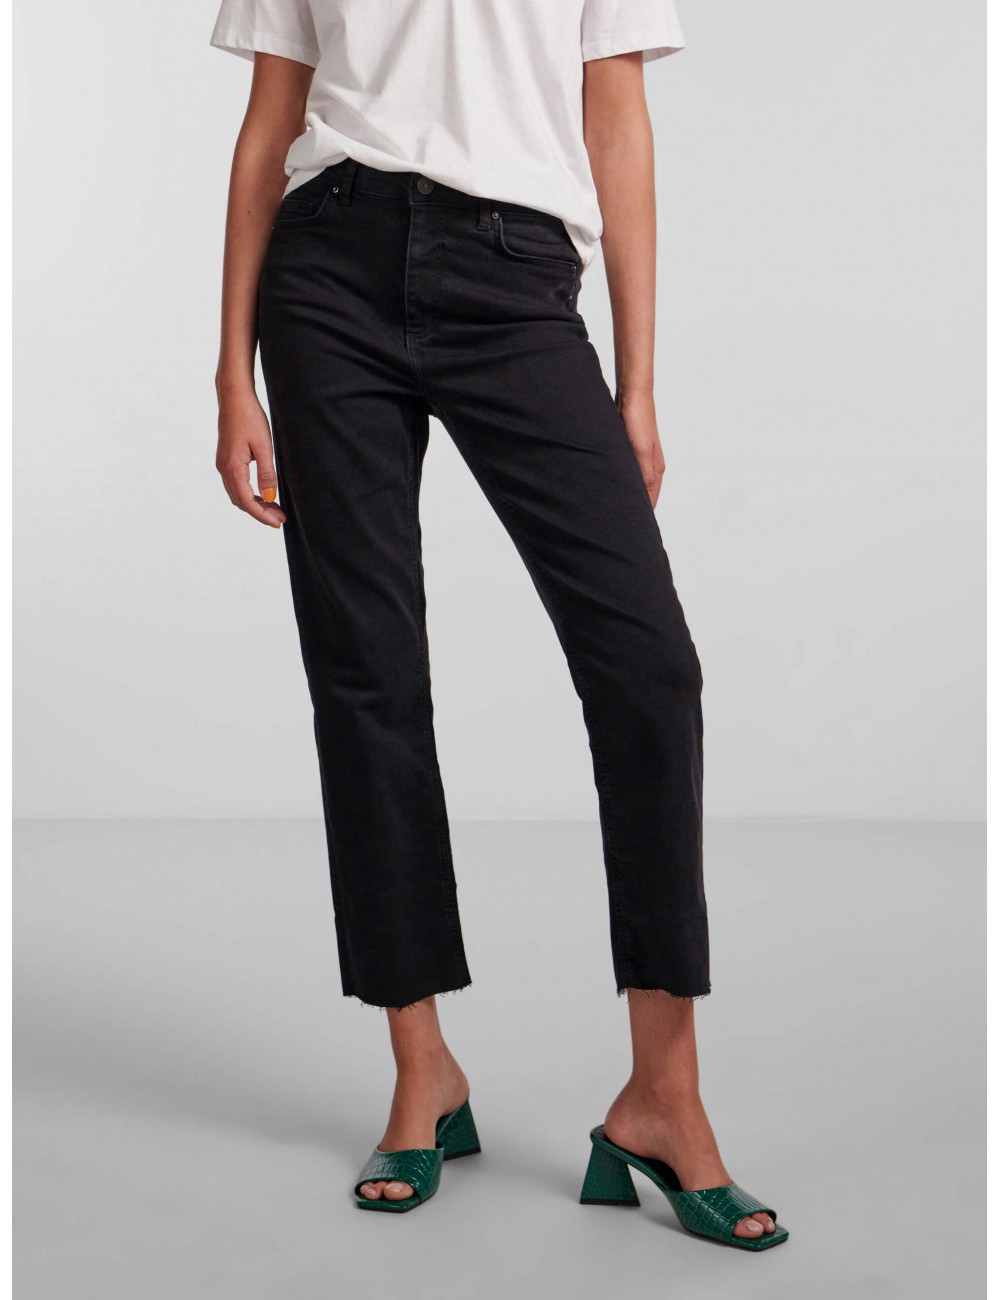 Jeans negro modelo Delly de la marca Pieces.